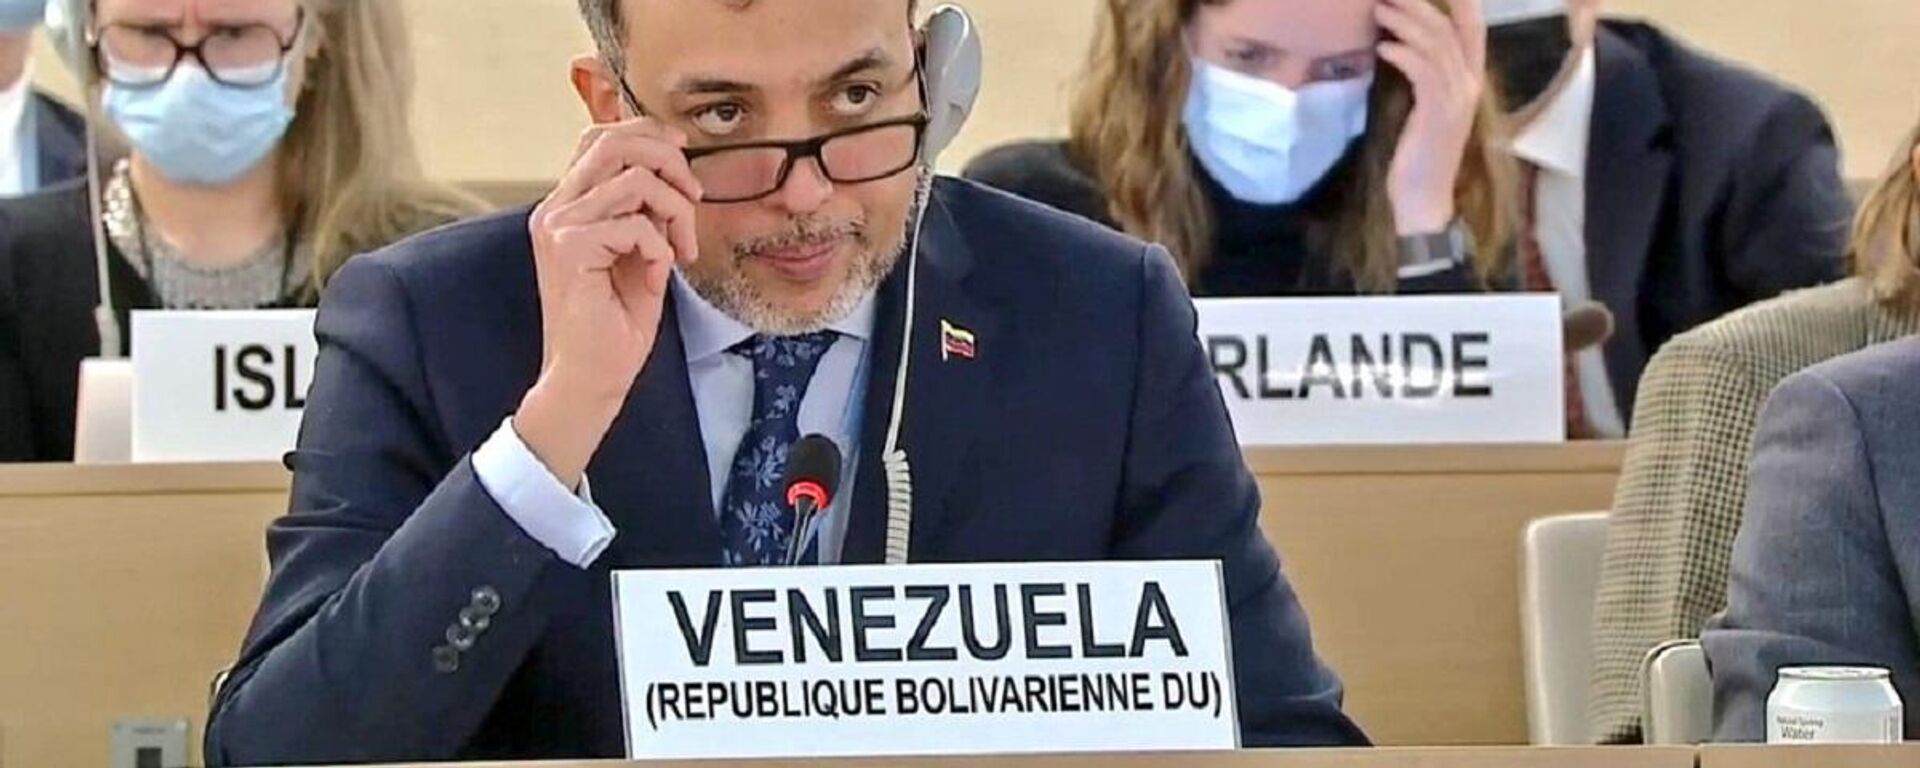 Hector Constant, embajador de Venezuela ante la ONU - Sputnik Mundo, 1920, 07.04.2022